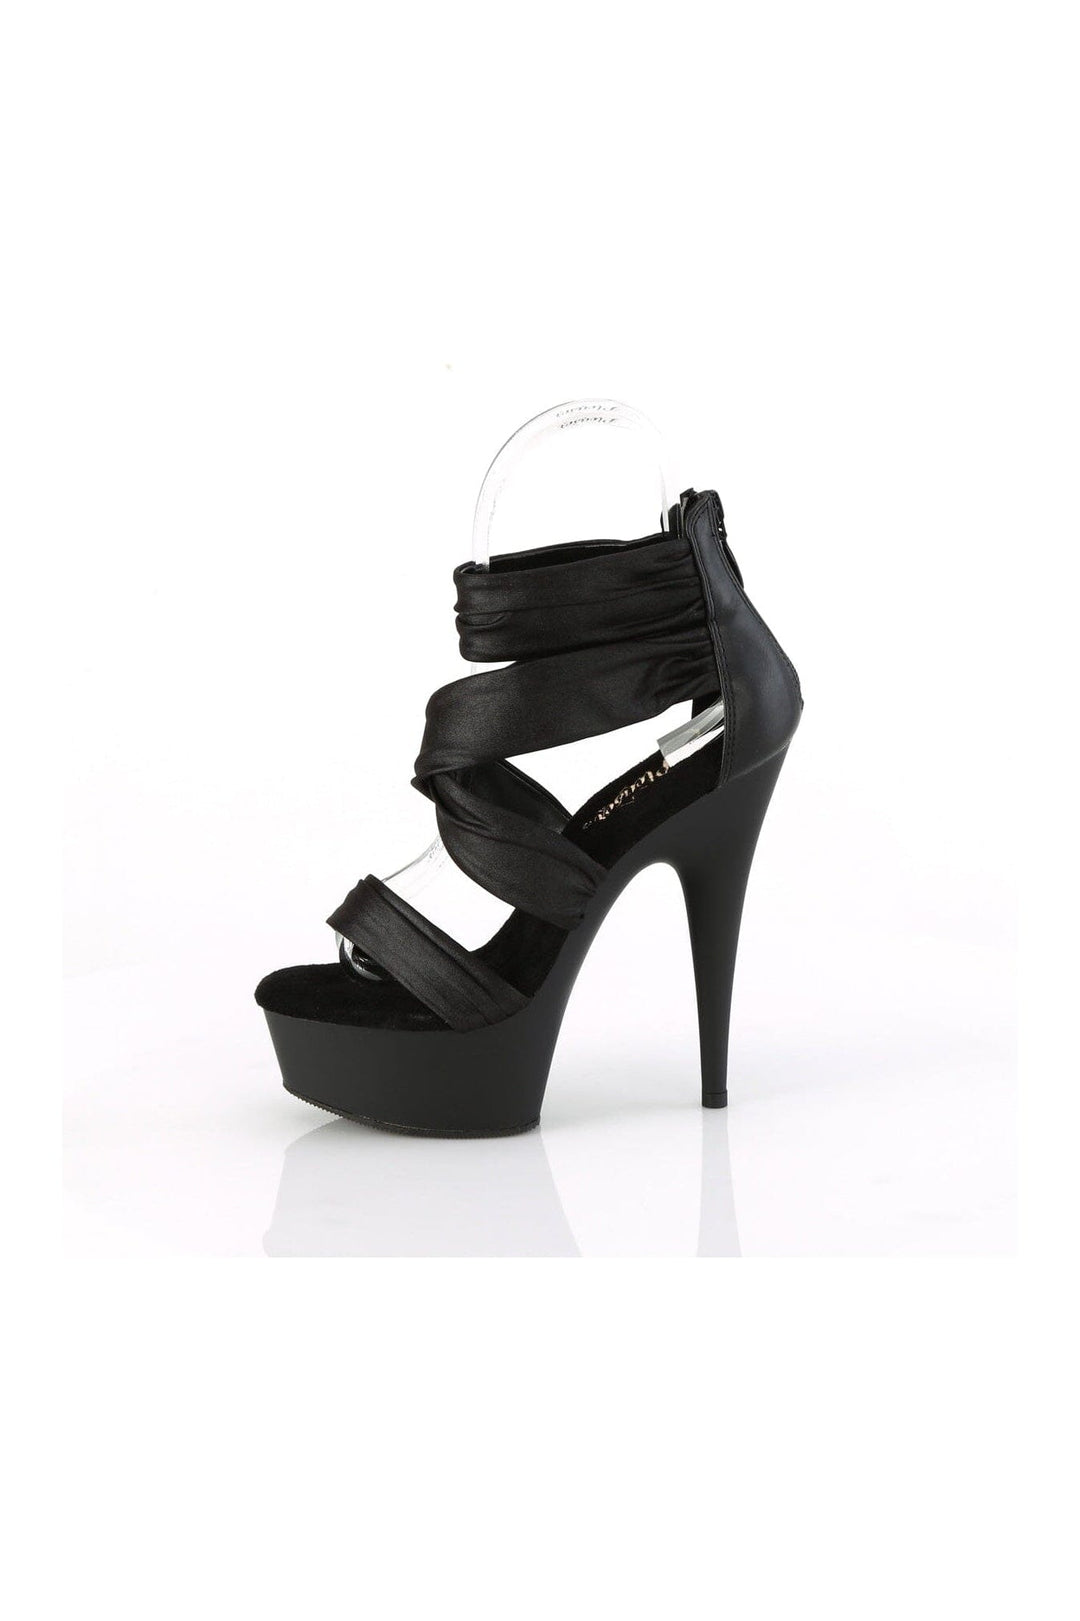 DELIGHT-620 Black Faux Leather Sandal-Sandals-Pleaser-SEXYSHOES.COM